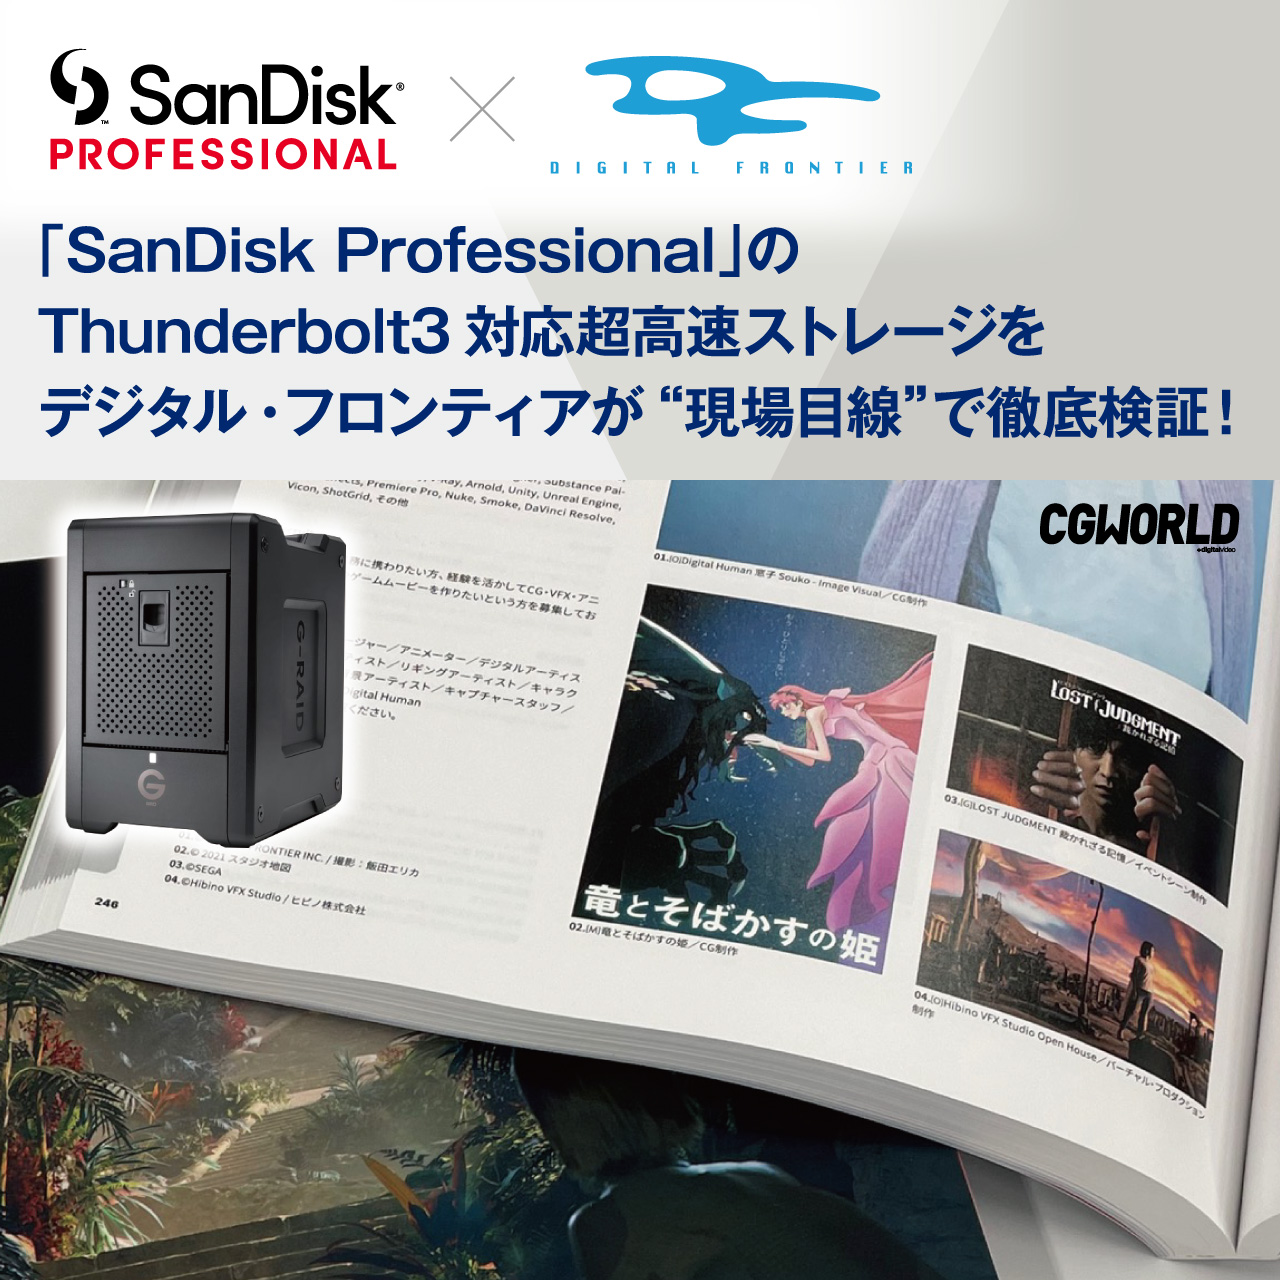 外部接続で、リアルタイム編集室のストレージとしても使える転送速度！？『SanDisk Professional』のThunderbolt3対応の超高速ストレージをデジタル・フロンティアが”現場目線”で徹底検証！